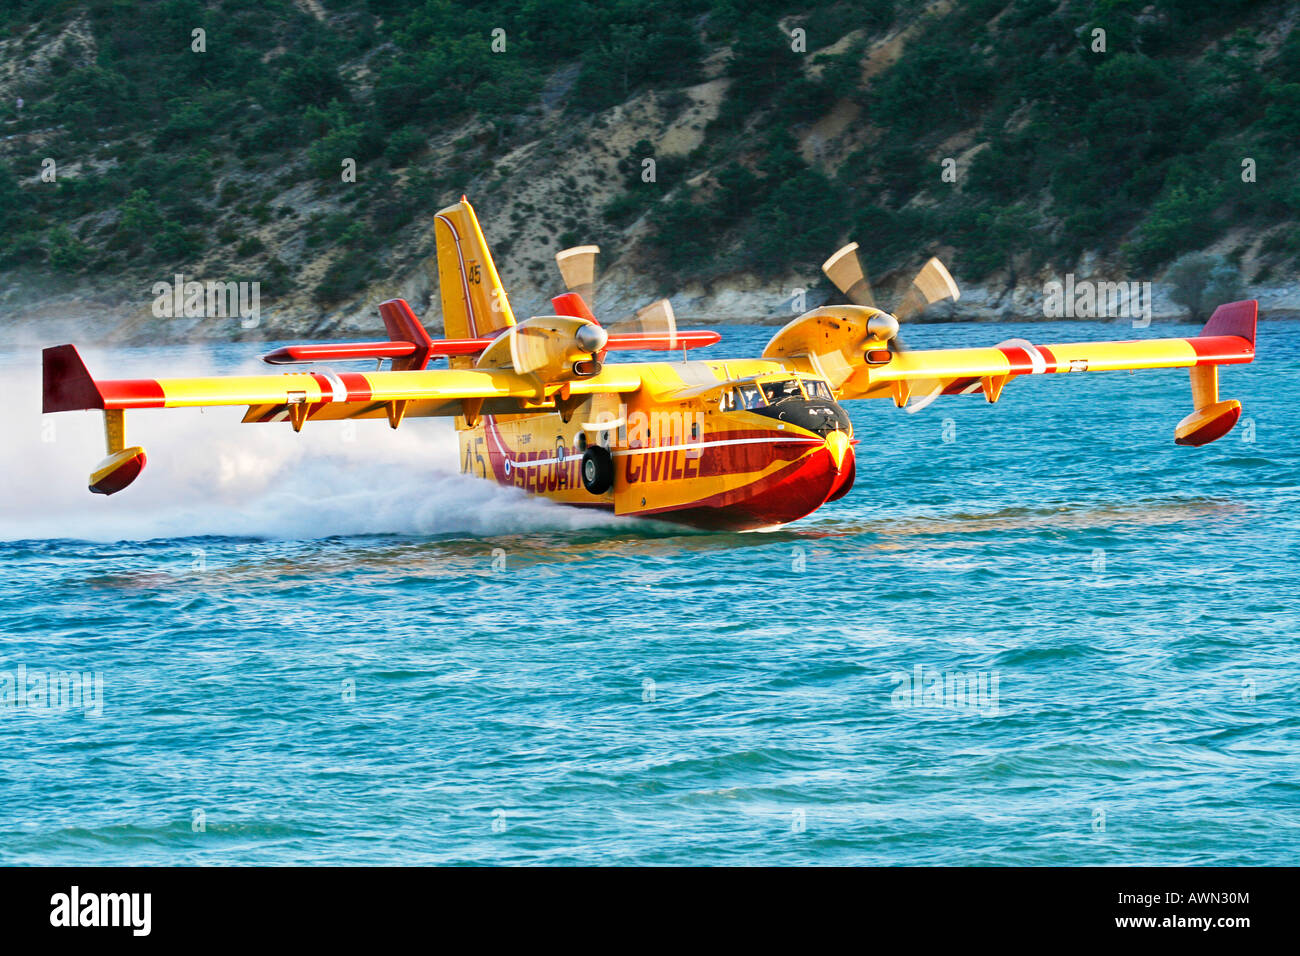 Feuerwehr-Flugzeug Securité Civile Lac de St. Croix Provence Frankreich Stockfoto